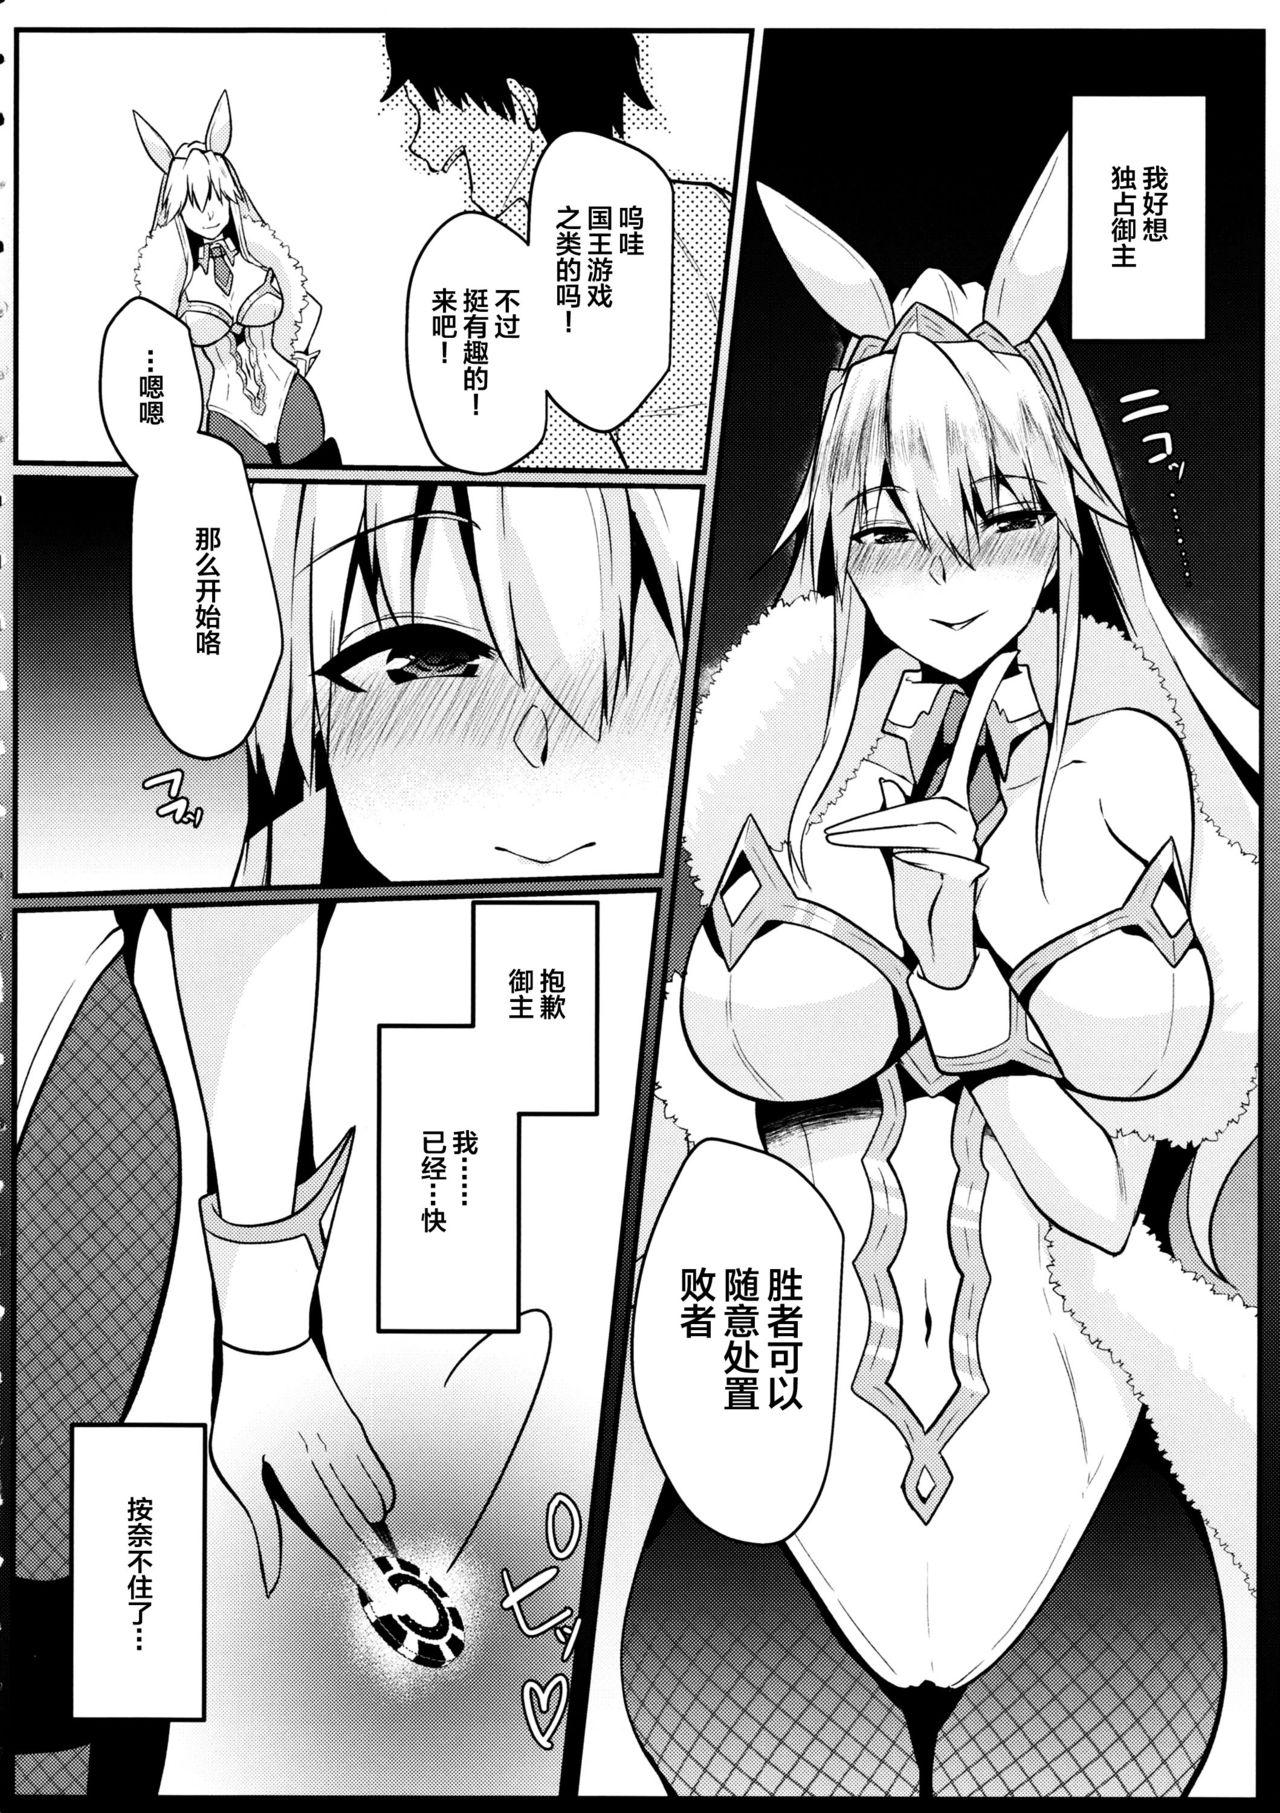 Reverse Cowgirl Bunny ni Natta Artoria wa Seiyoku ga Sugoi - Fate grand order Anal Porn - Page 5